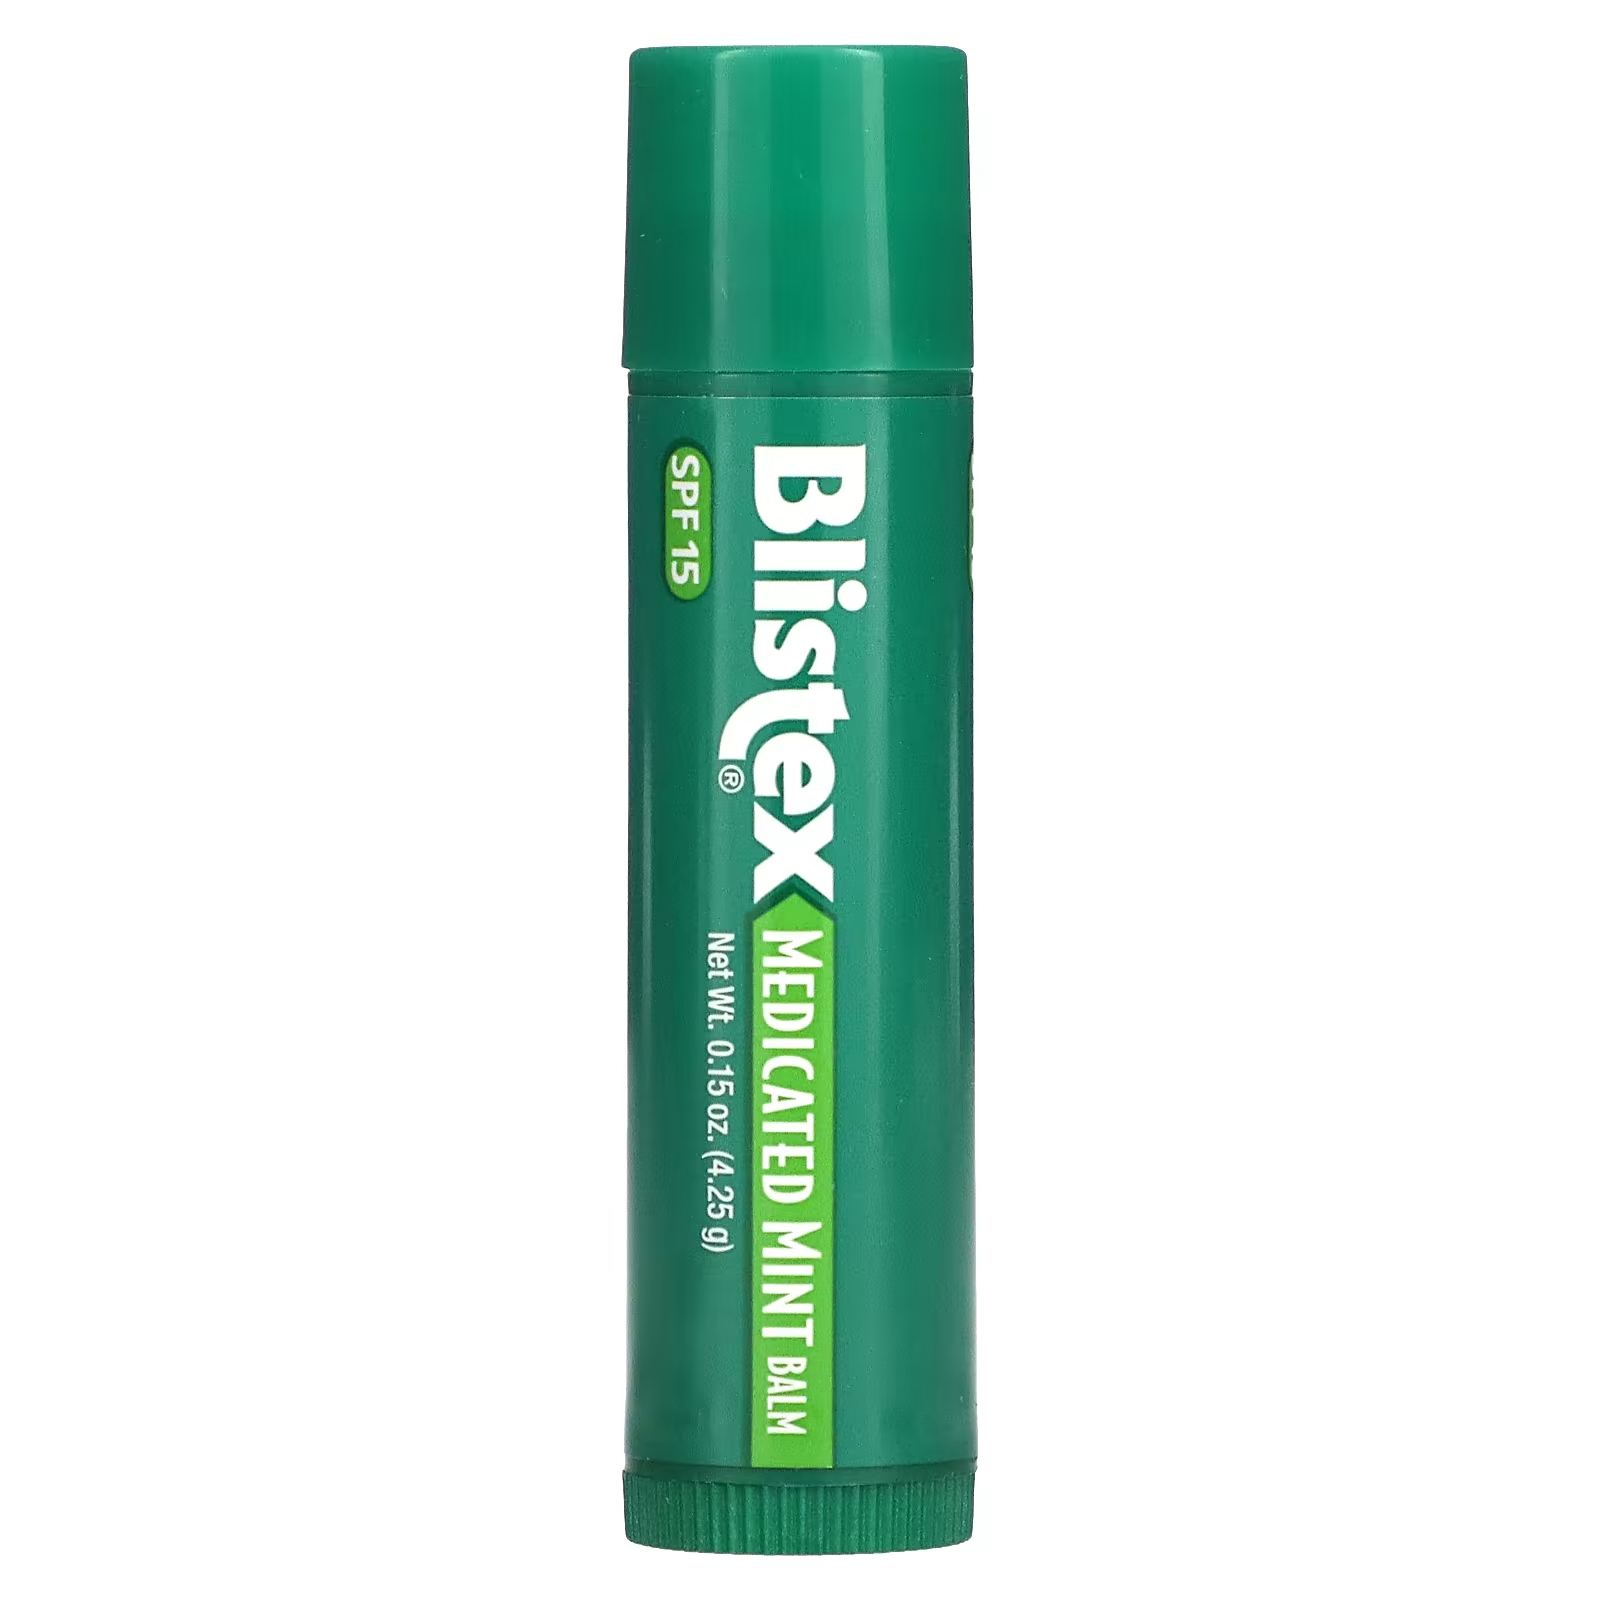 Blistex Лекарственное средство для защиты губ/солнцезащитное средство SPF 15, мятное, 0,15 унции (4,25 г) фотографии